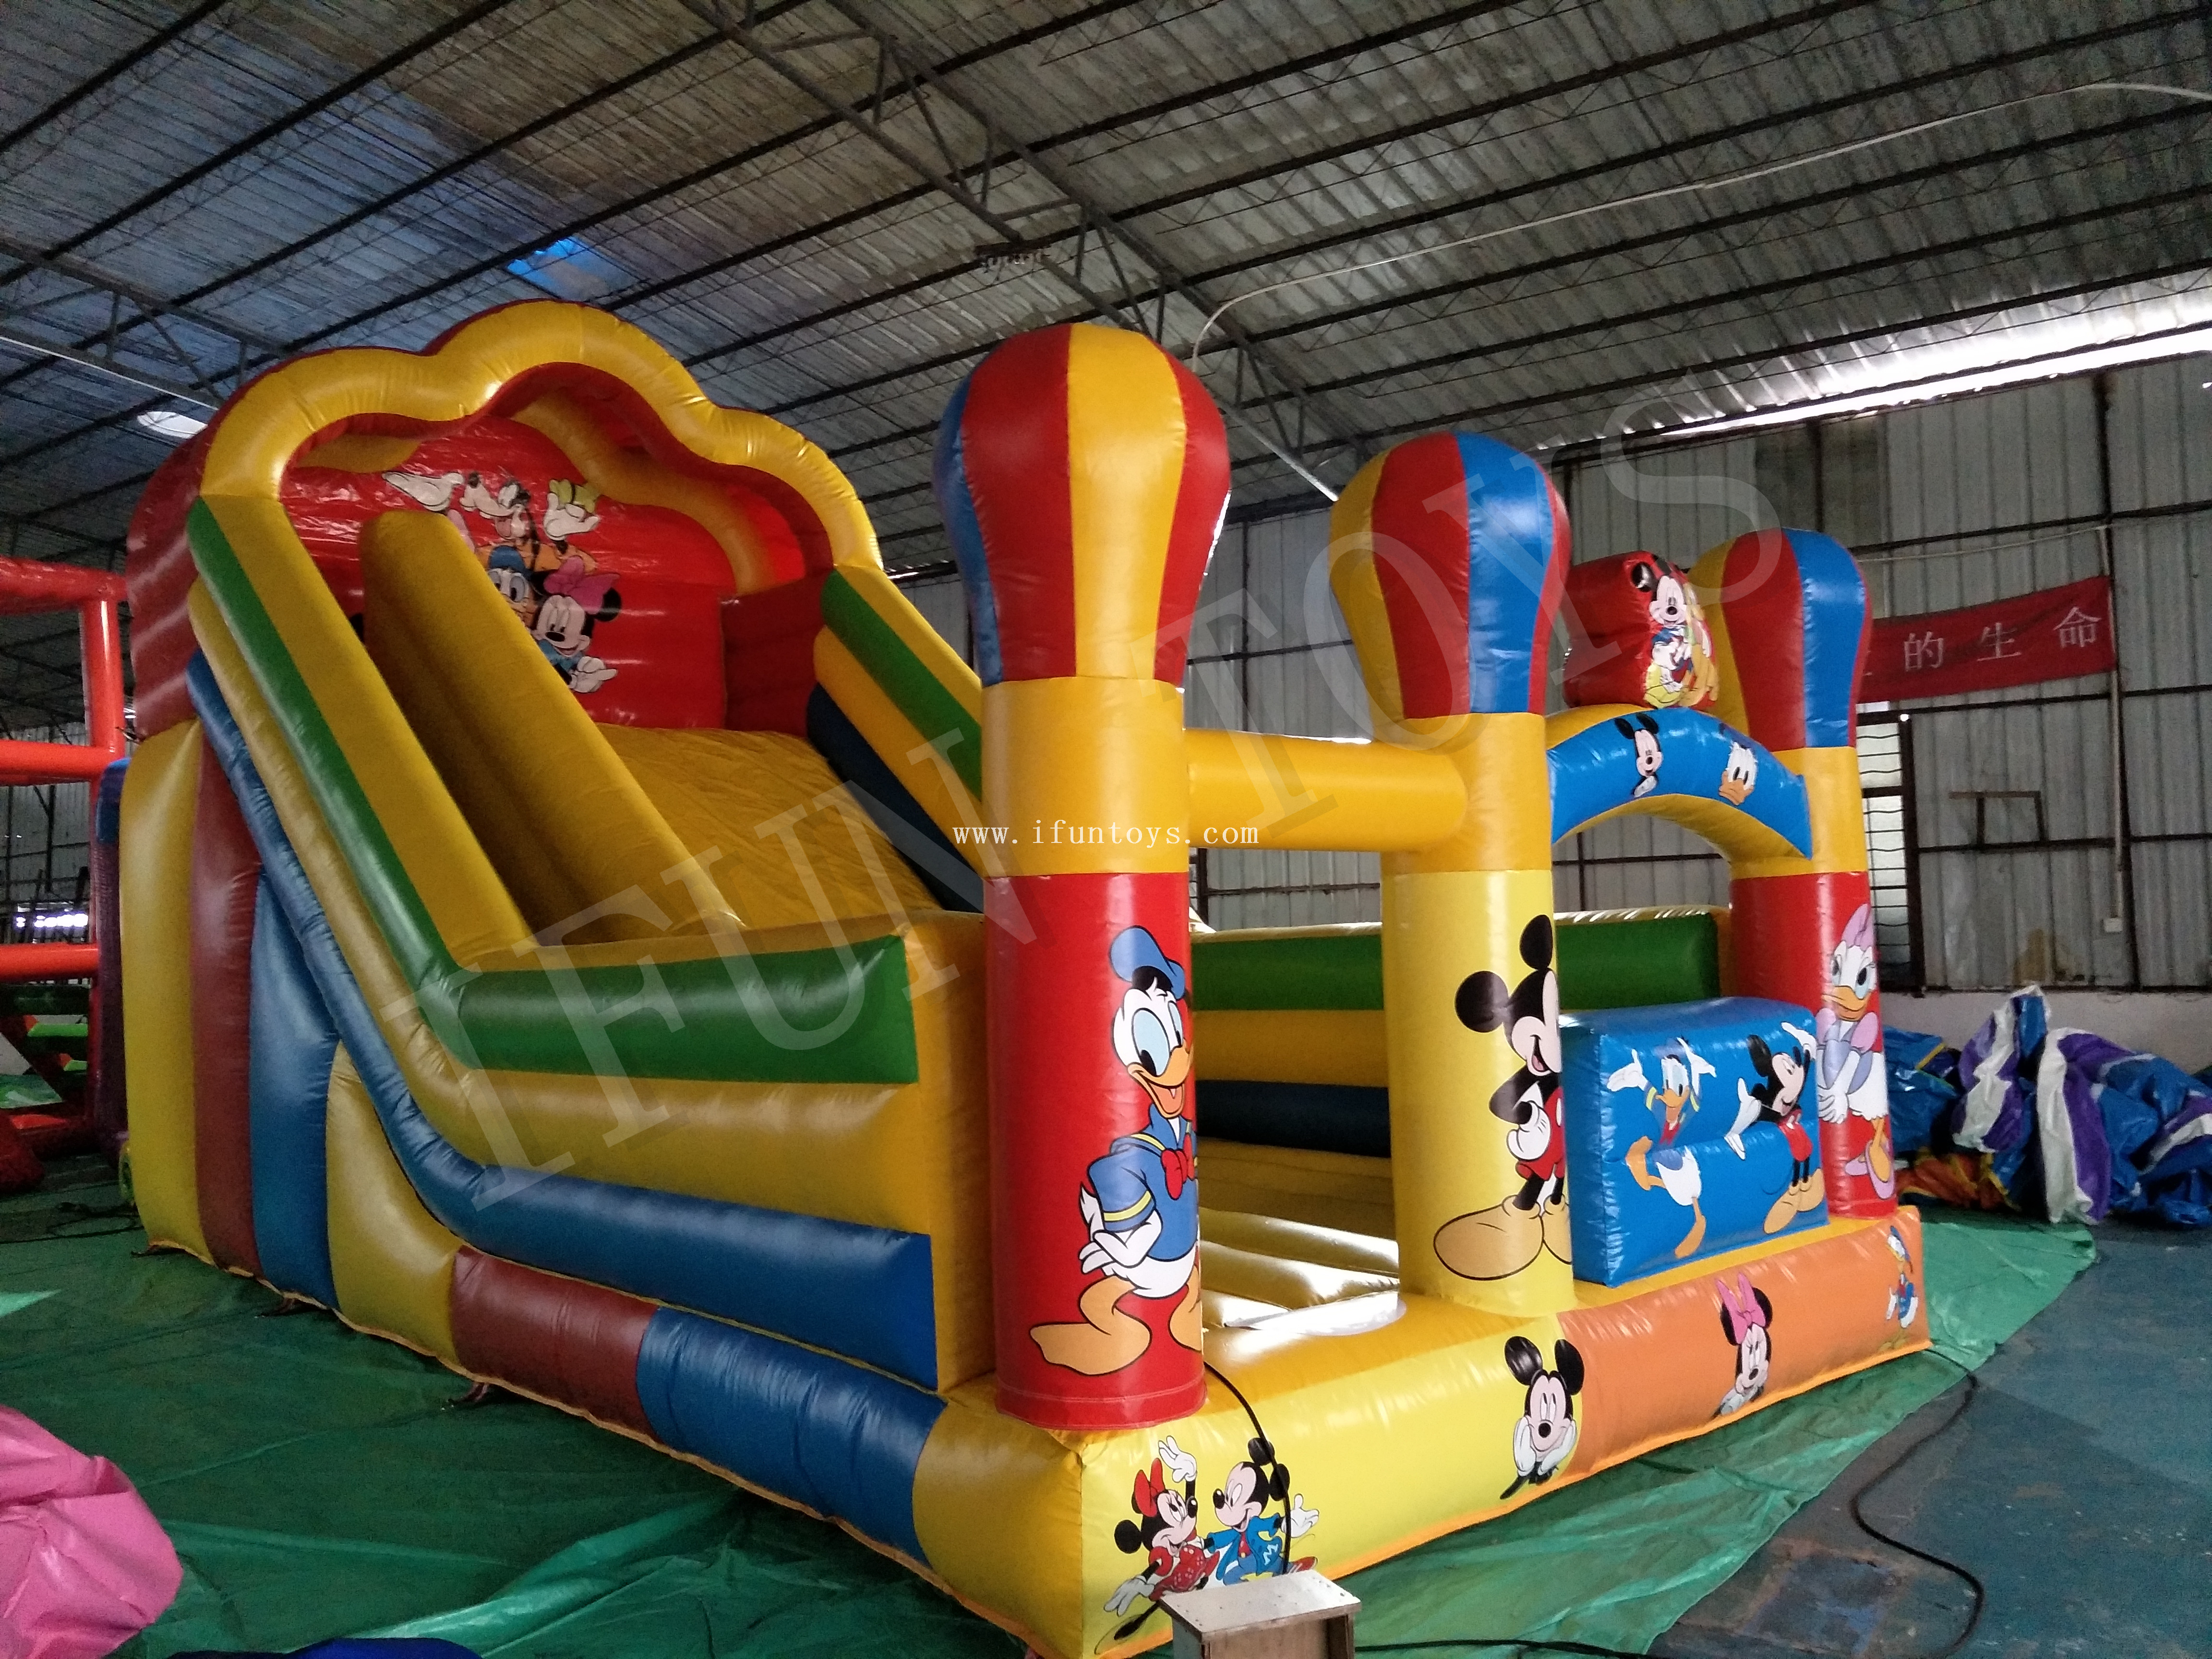 Disney Theme Inflatable Slide / Dry Slide / Bouncy Slide for Kids